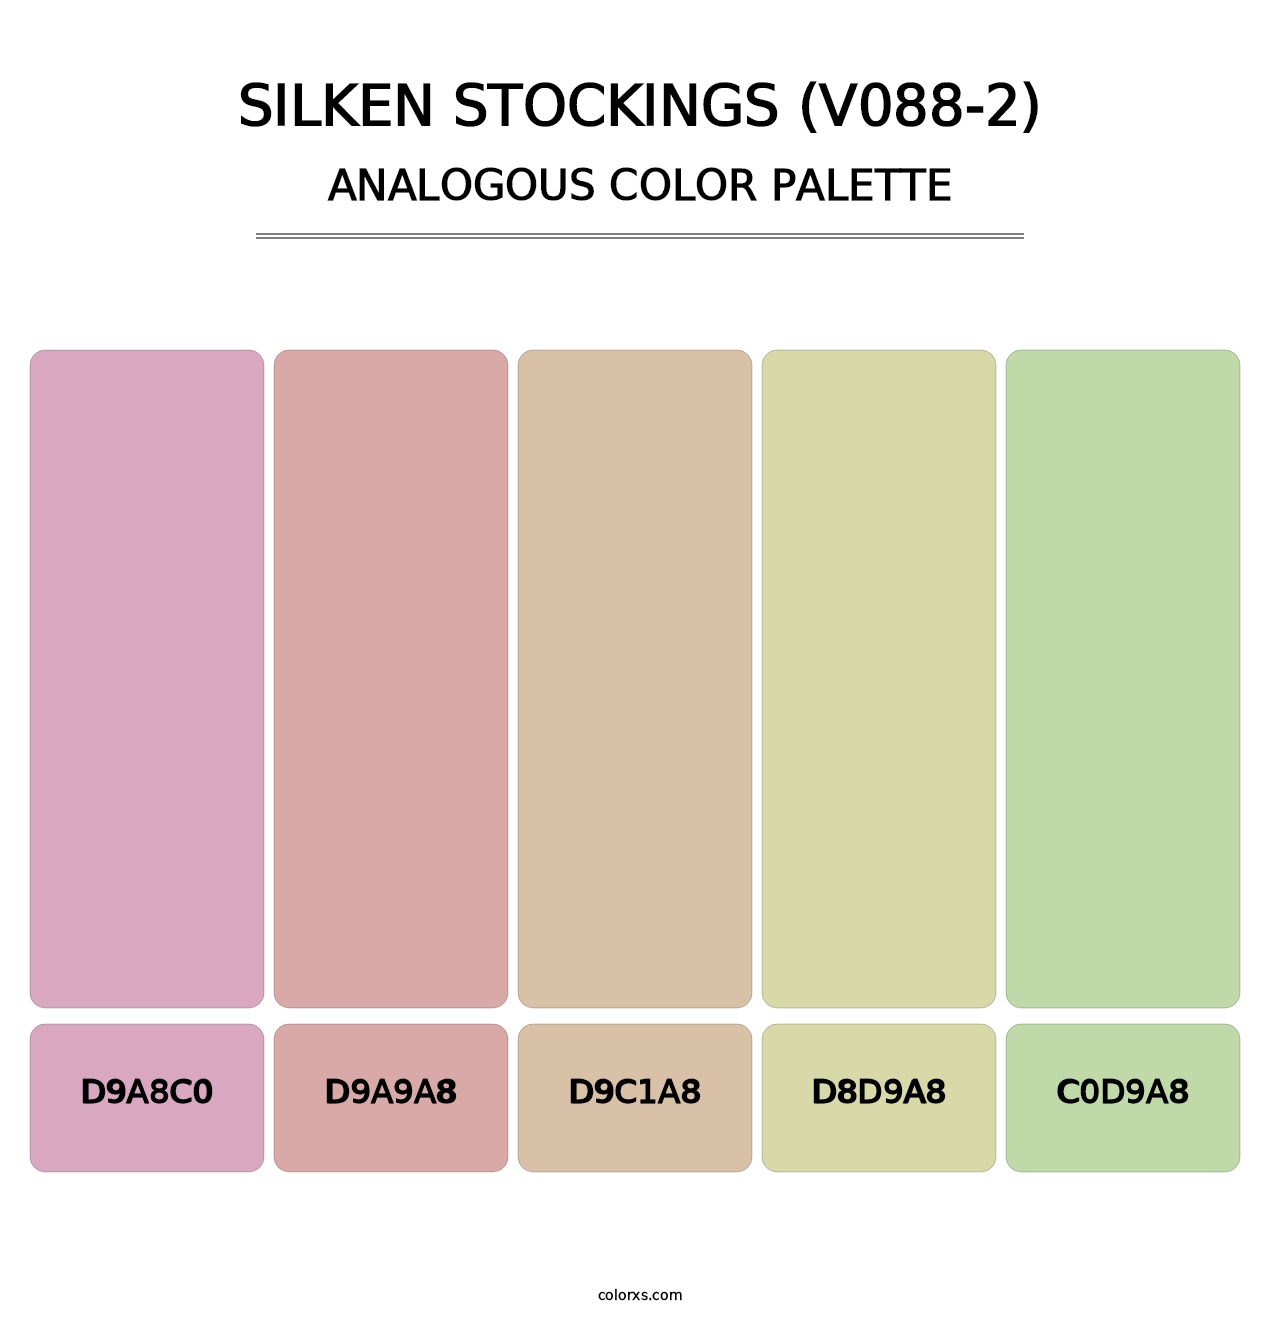 Silken Stockings (V088-2) - Analogous Color Palette